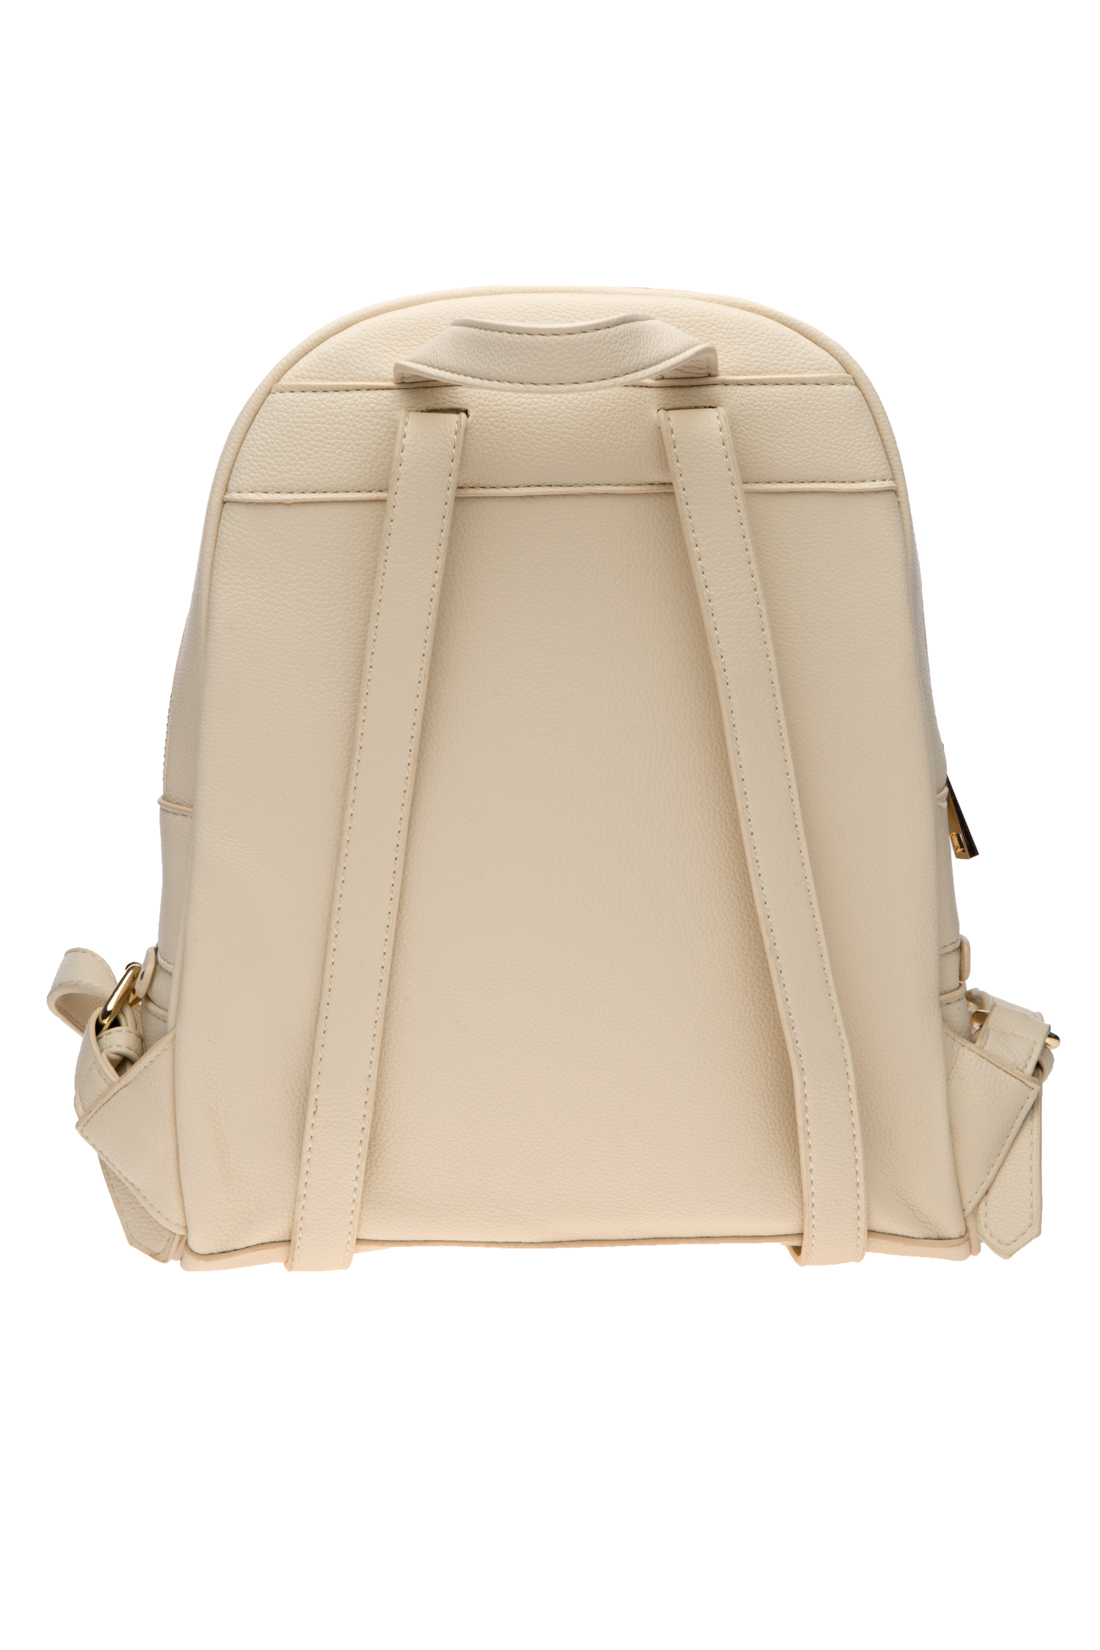 Рюкзак на молнии (арт. baon B377009), размер Без/раз, цвет бежевый Рюкзак на молнии (арт. baon B377009) - фото 2